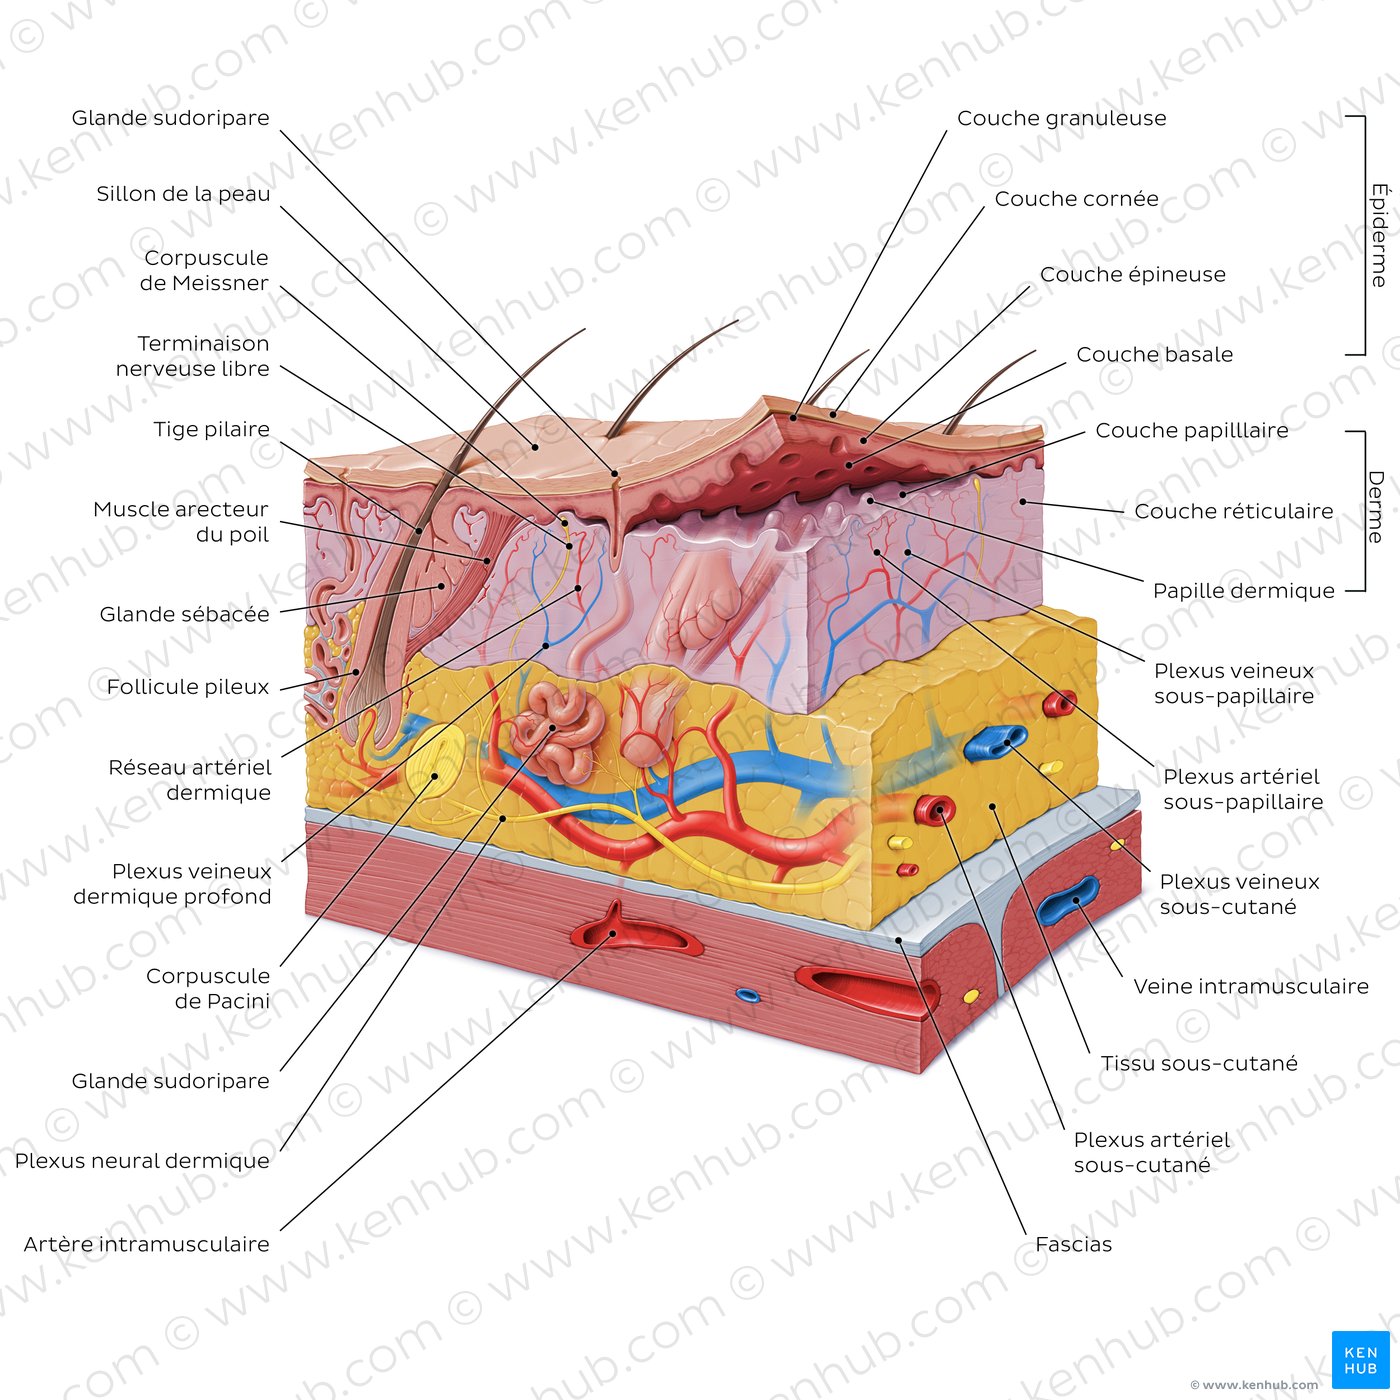 Structure histologique de la peau (schéma)